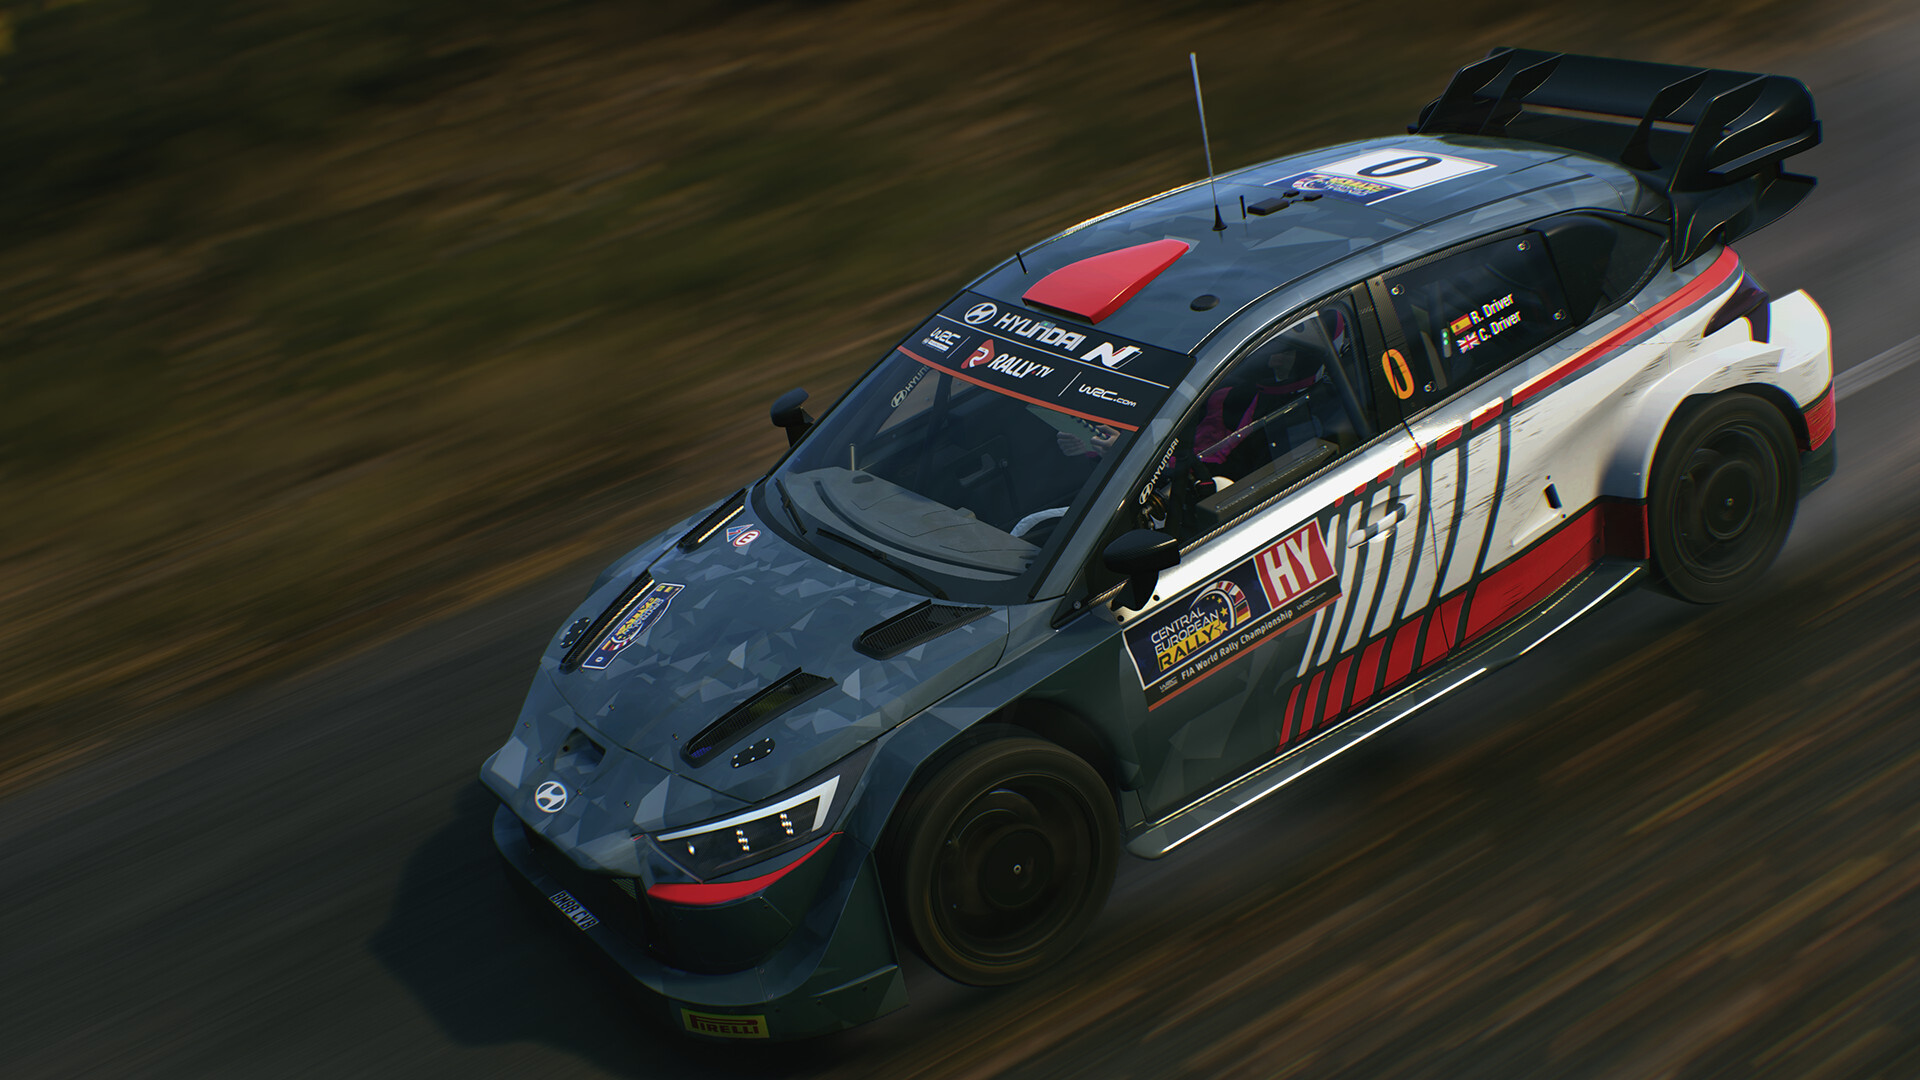 EA SPORTS™ WRC – Like Racing But Rally – Electronic Arts